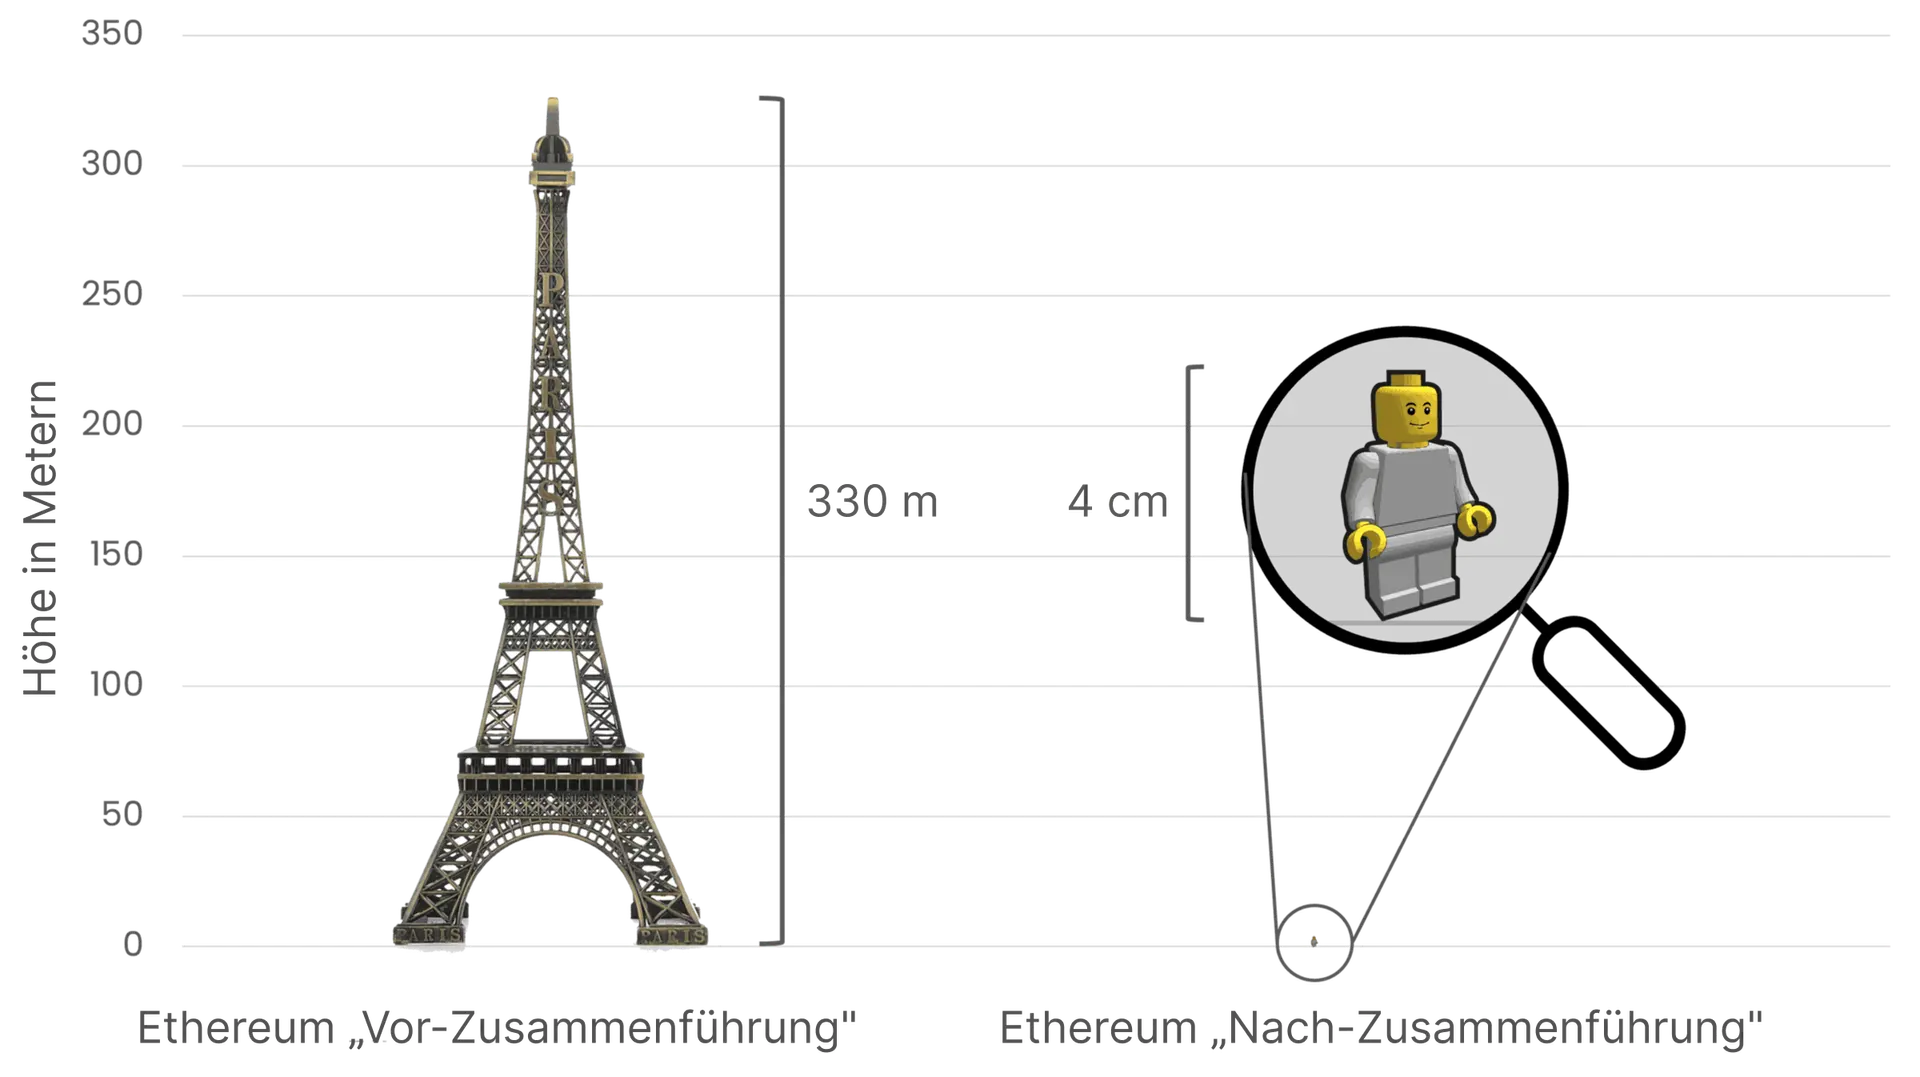 Ein Vergleich von Ethereums Energieverbrauch vor und nach der Zusammenführung – mithilfe des Eiffelturms (330 Meter hoch) auf der linken Seite, der den hohen Energieverbrauch vor der Zusammenführung symbolisiert, und einer kleinen 4-cm-Lego-Figur auf der rechten Seite, die die drastische Reduktion des Energieverbrauchs nach der Zusammenführung darstellt